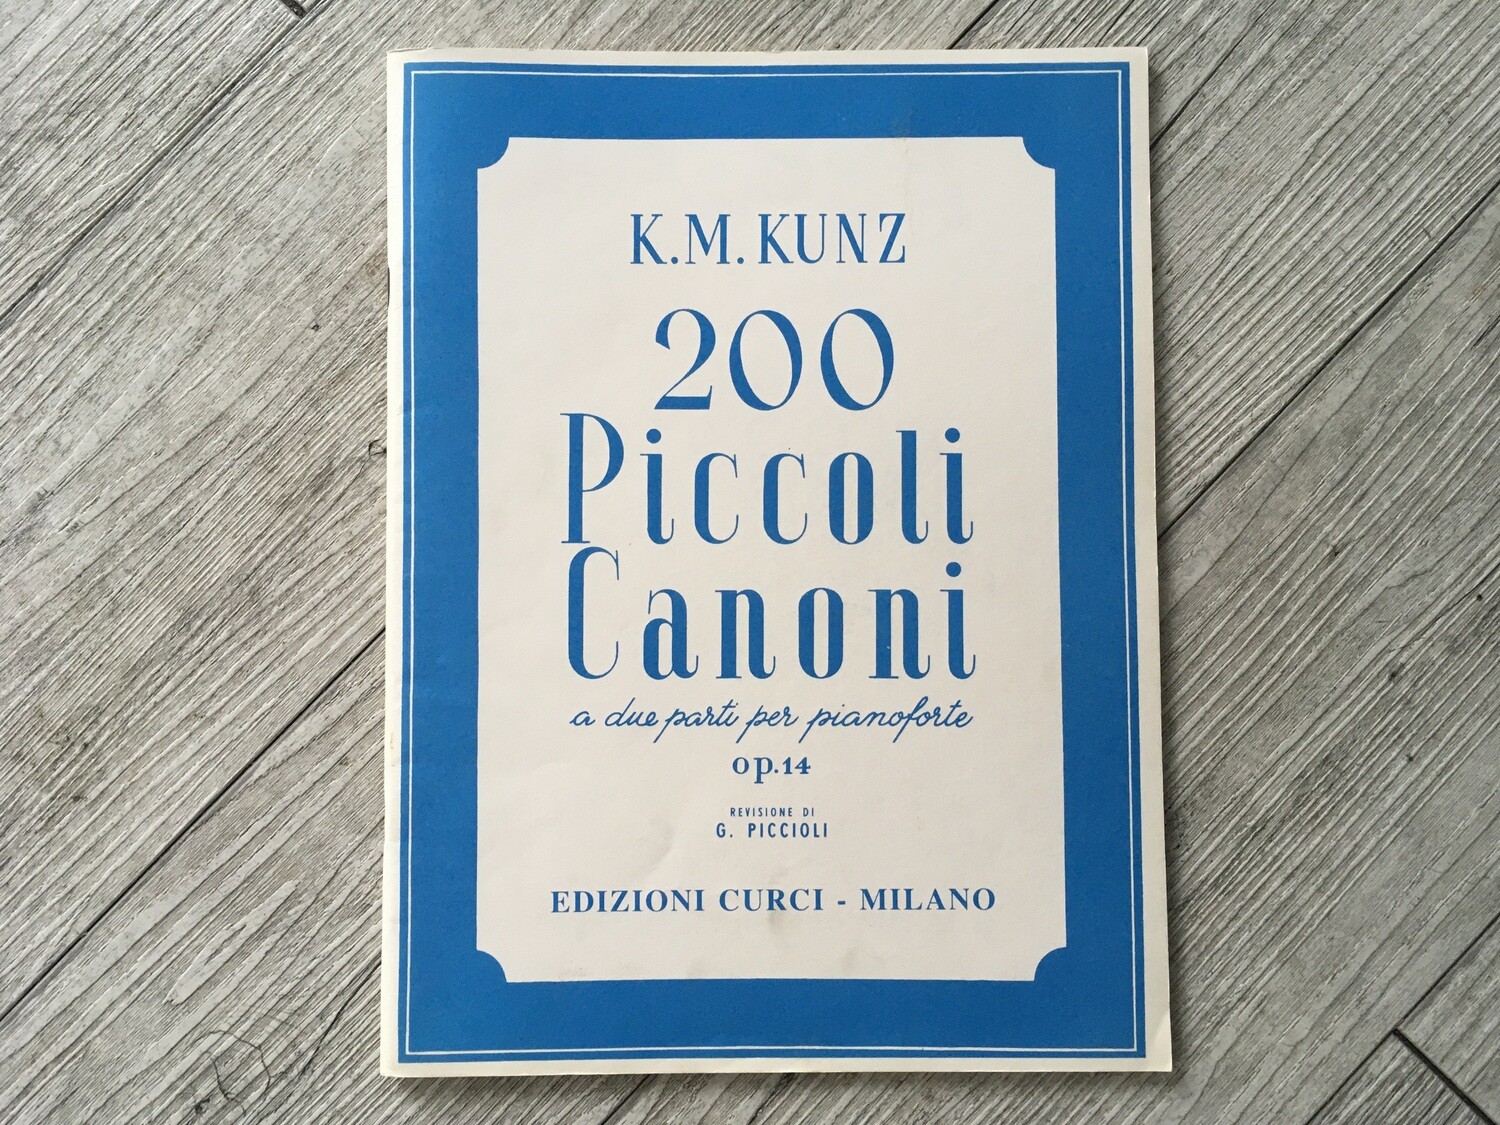 K. M. KUNZ - 200 piccoli canoni a due parti per pianoforte Op. 14